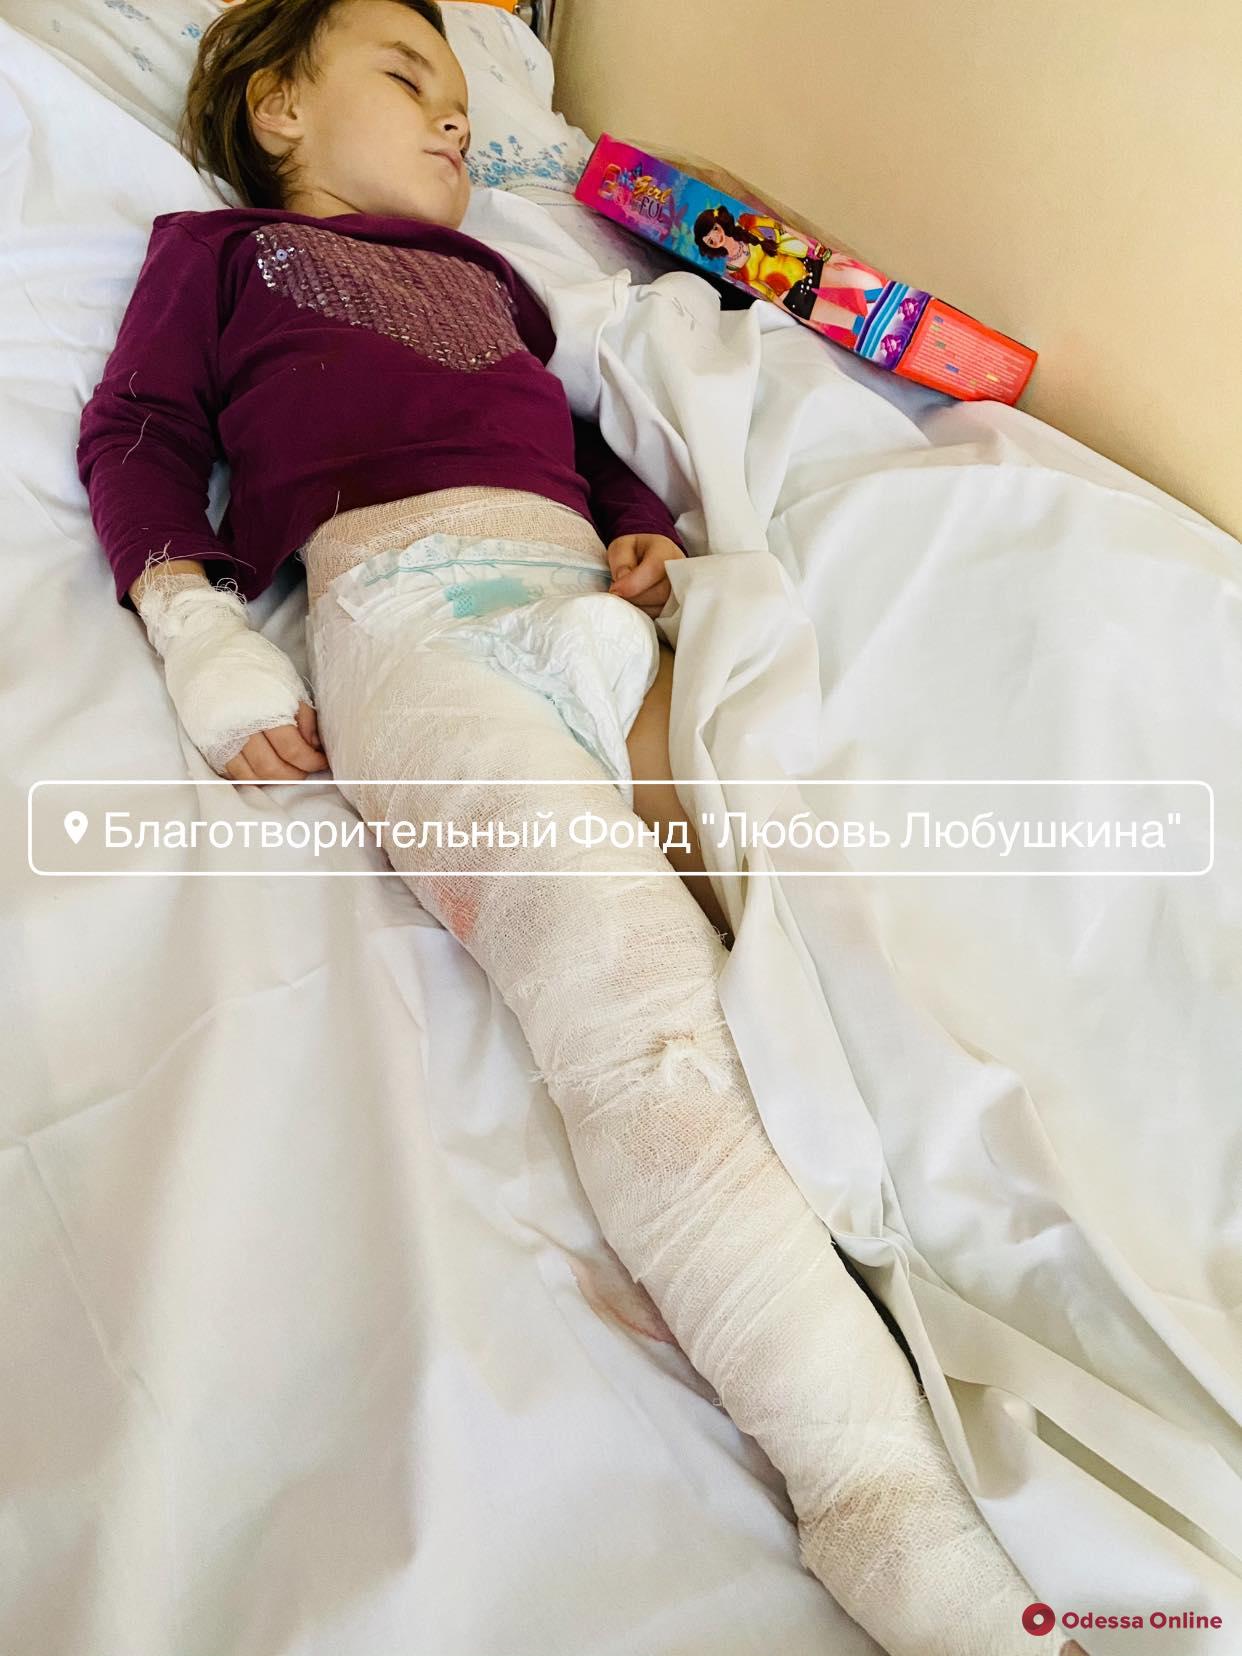 Обварилась кипятком: в одесской больнице прооперировали 4-летнюю девочку